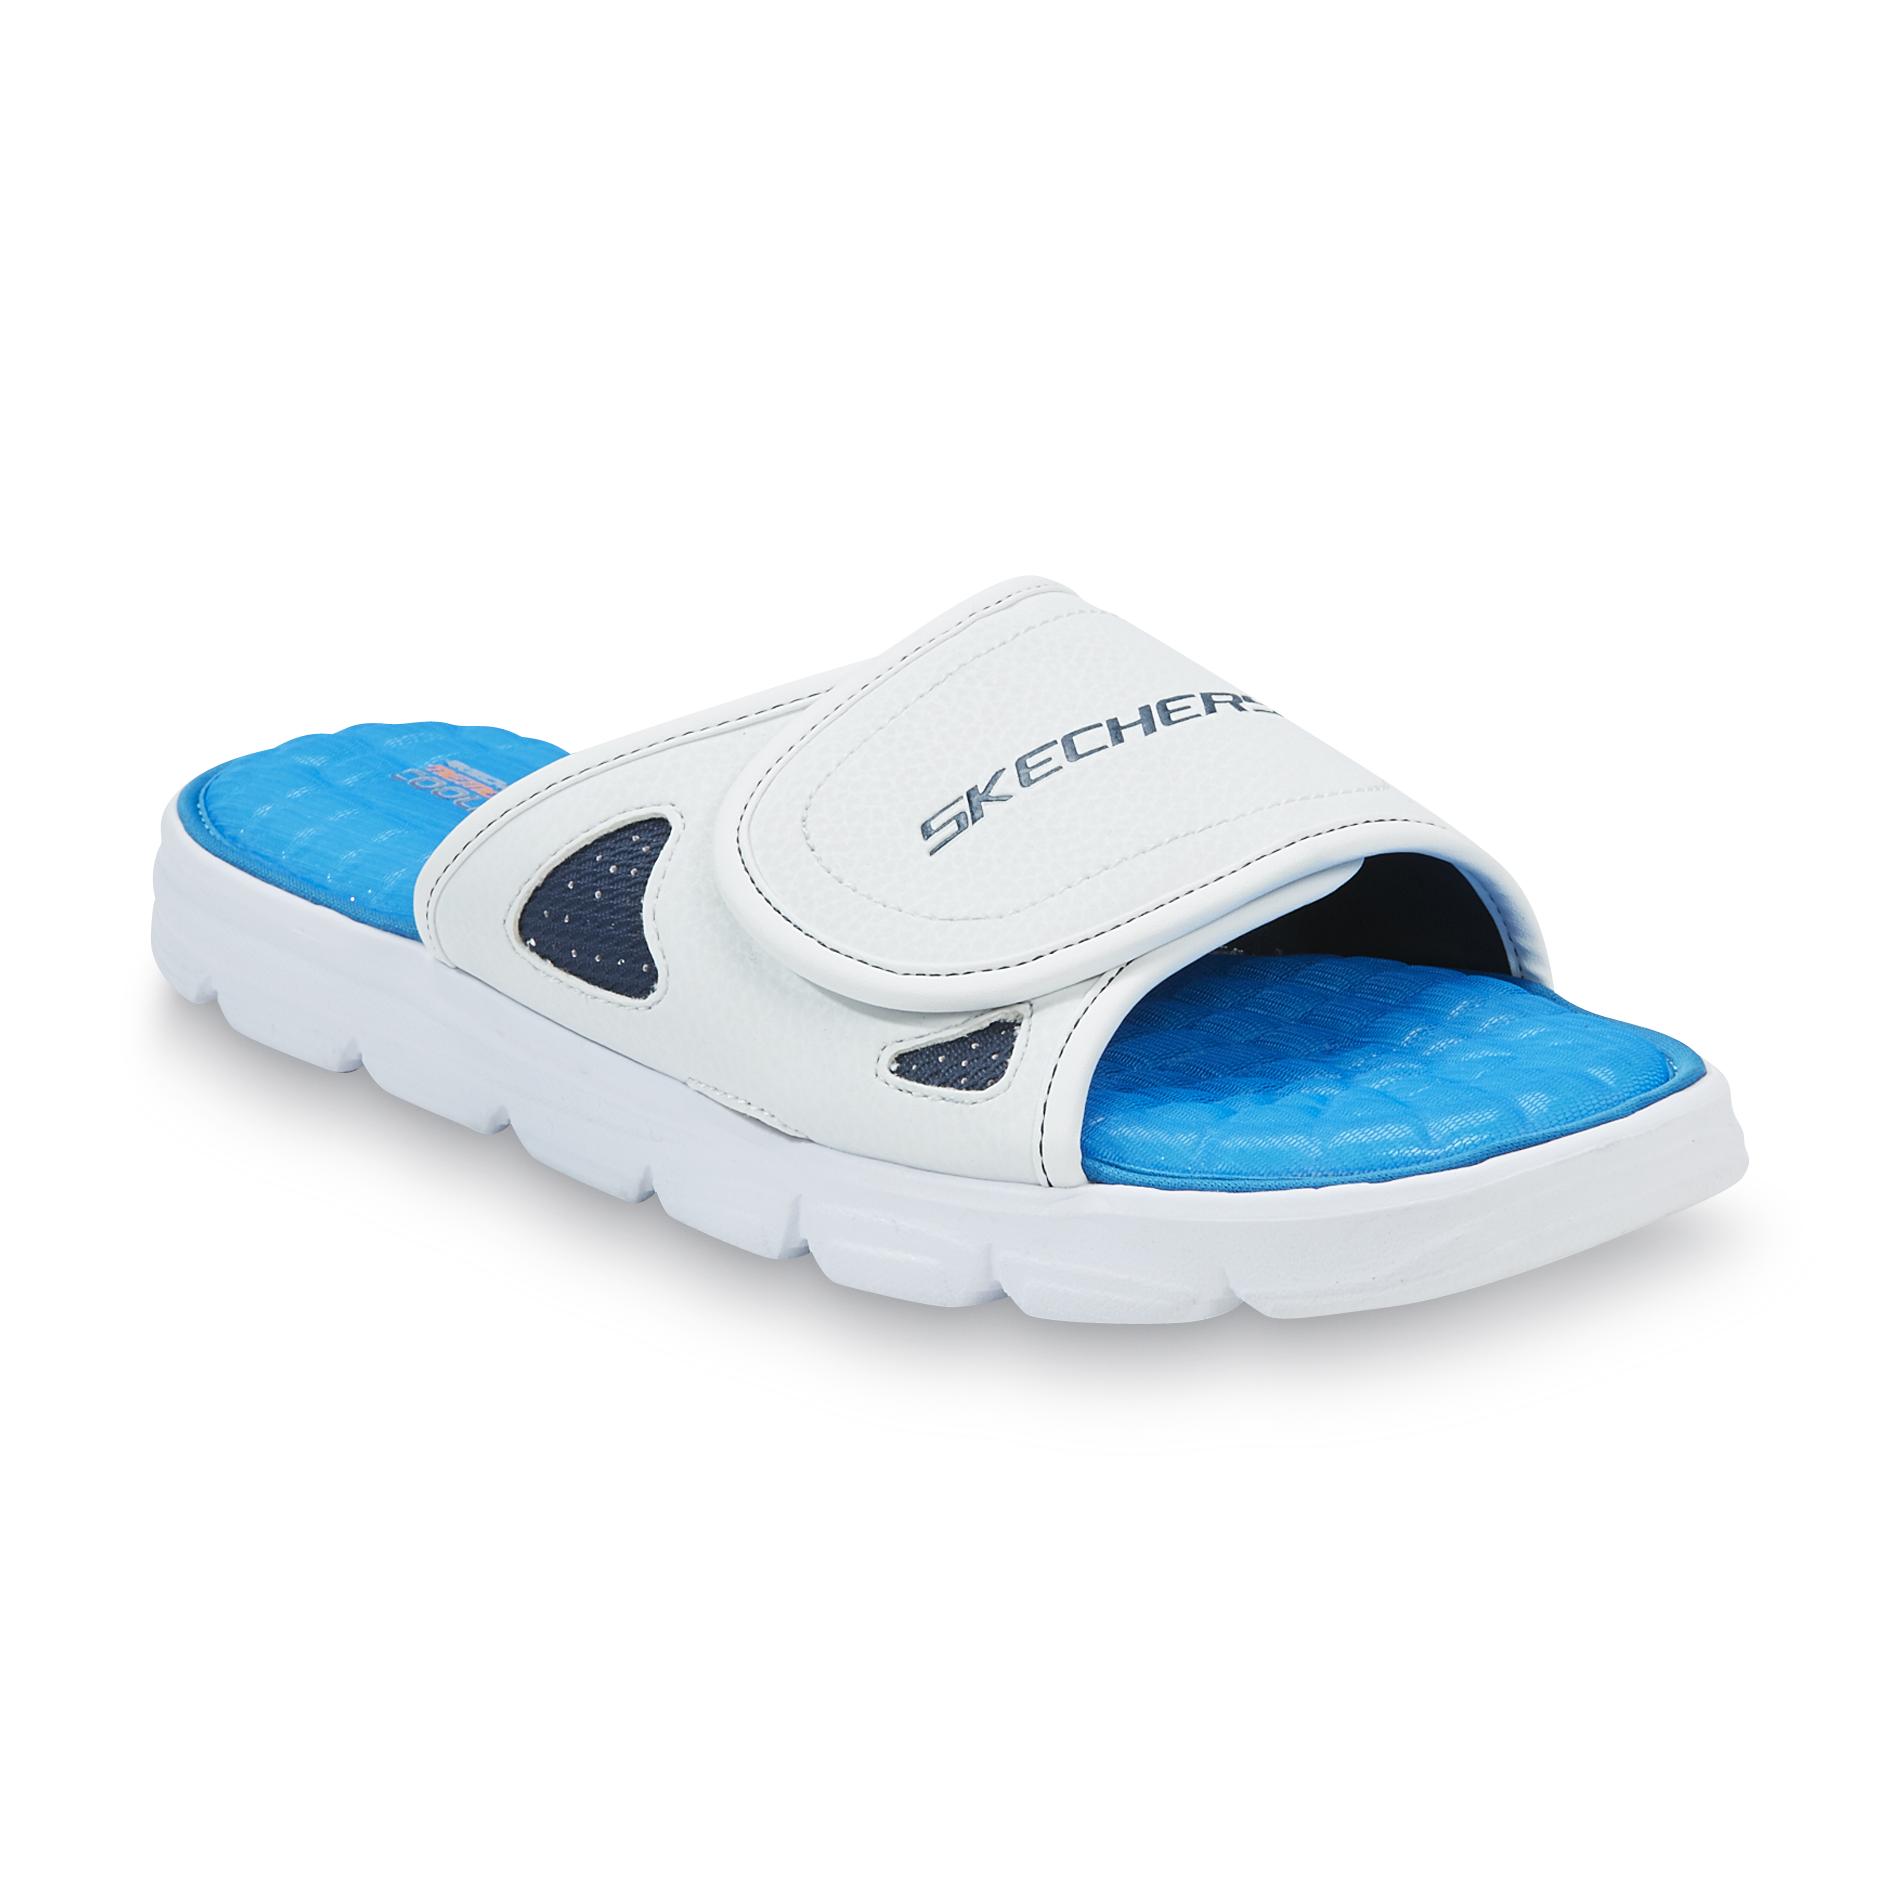 Skechers Men's Memory Foam Cooling Gel White Athletic Sandal